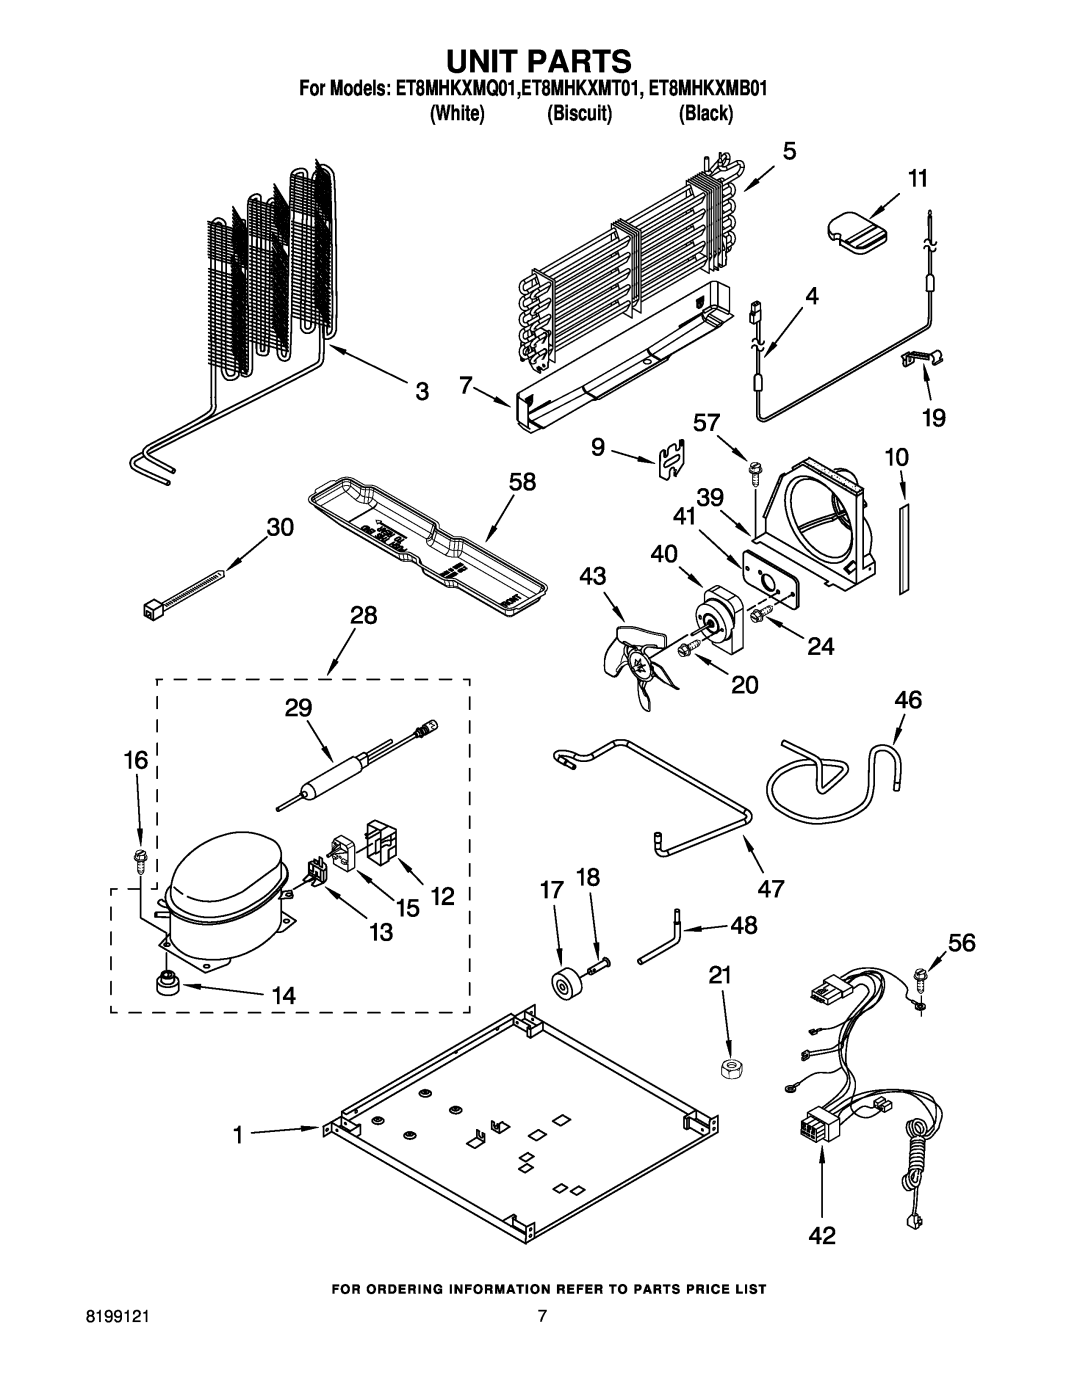 Whirlpool manual Unit Parts, For Models ET8MHKXMQ01,ET8MHKXMT01, ET8MHKXMB01 White Biscuit Black 